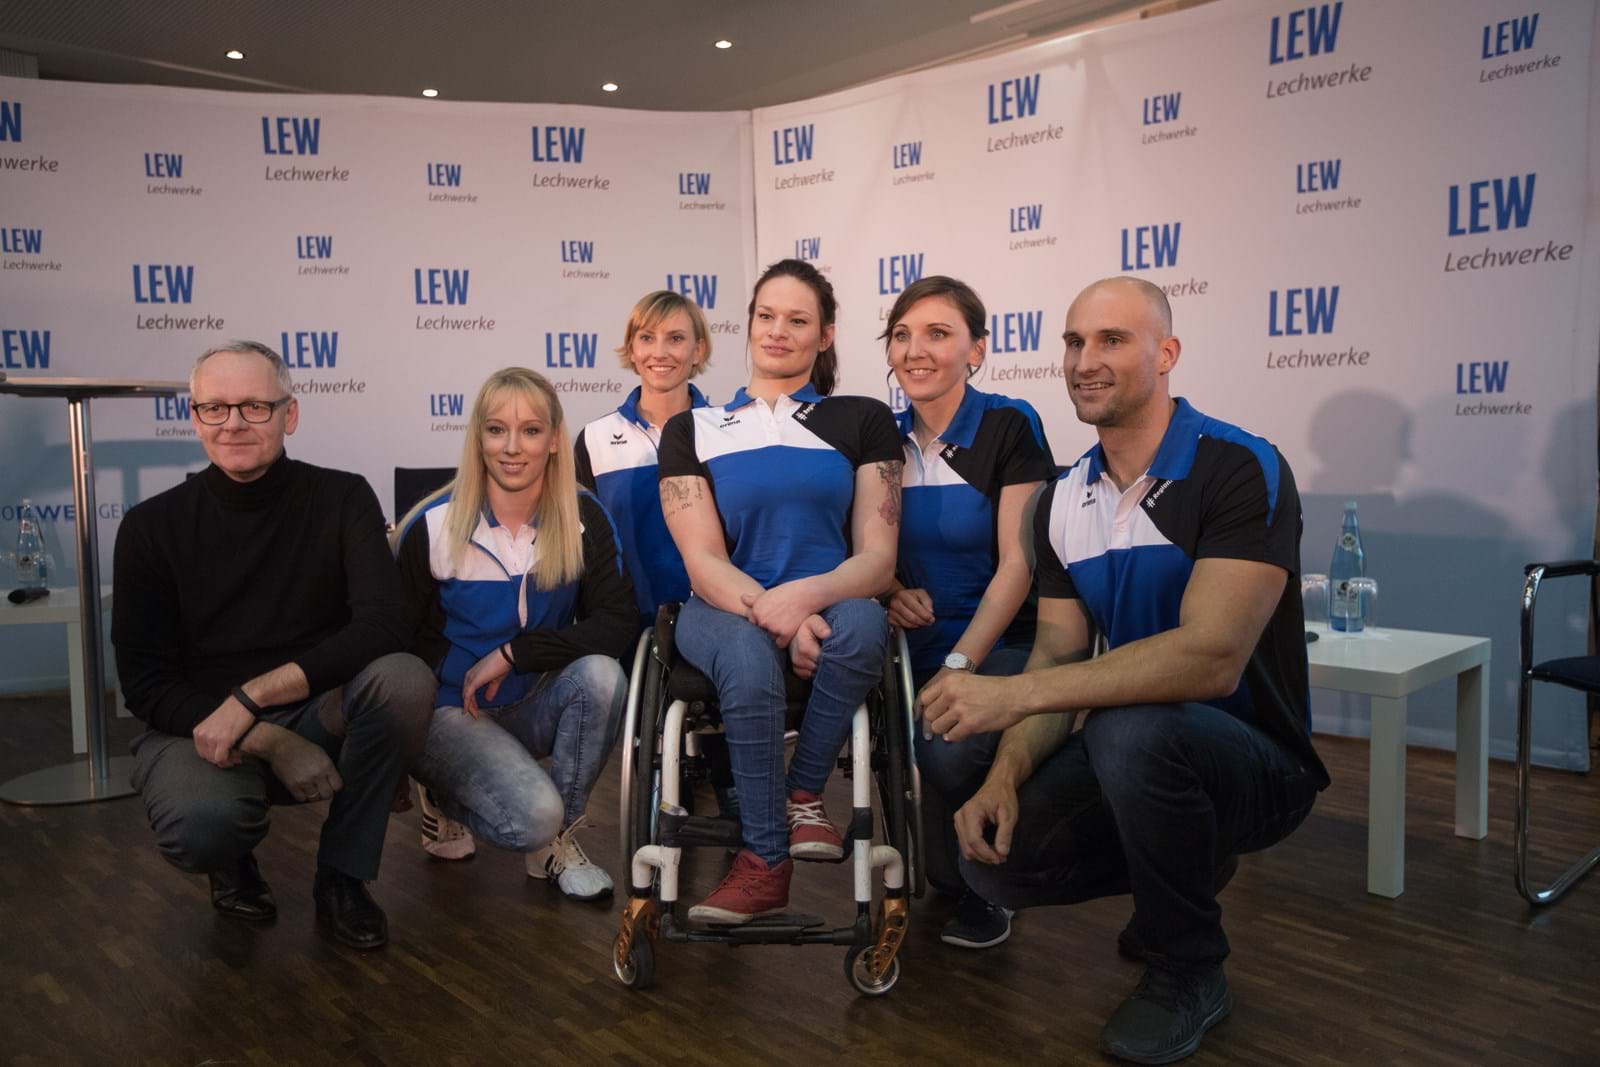 LEW-Vorstandsmitglied Dr. Markus Litpher mit den Spitzensportlern Janine Berger, Melanie Pfeifer, Lisa Nothelfer, Lisa Brennauer und Alexander Grimm (v.l.n.r.).